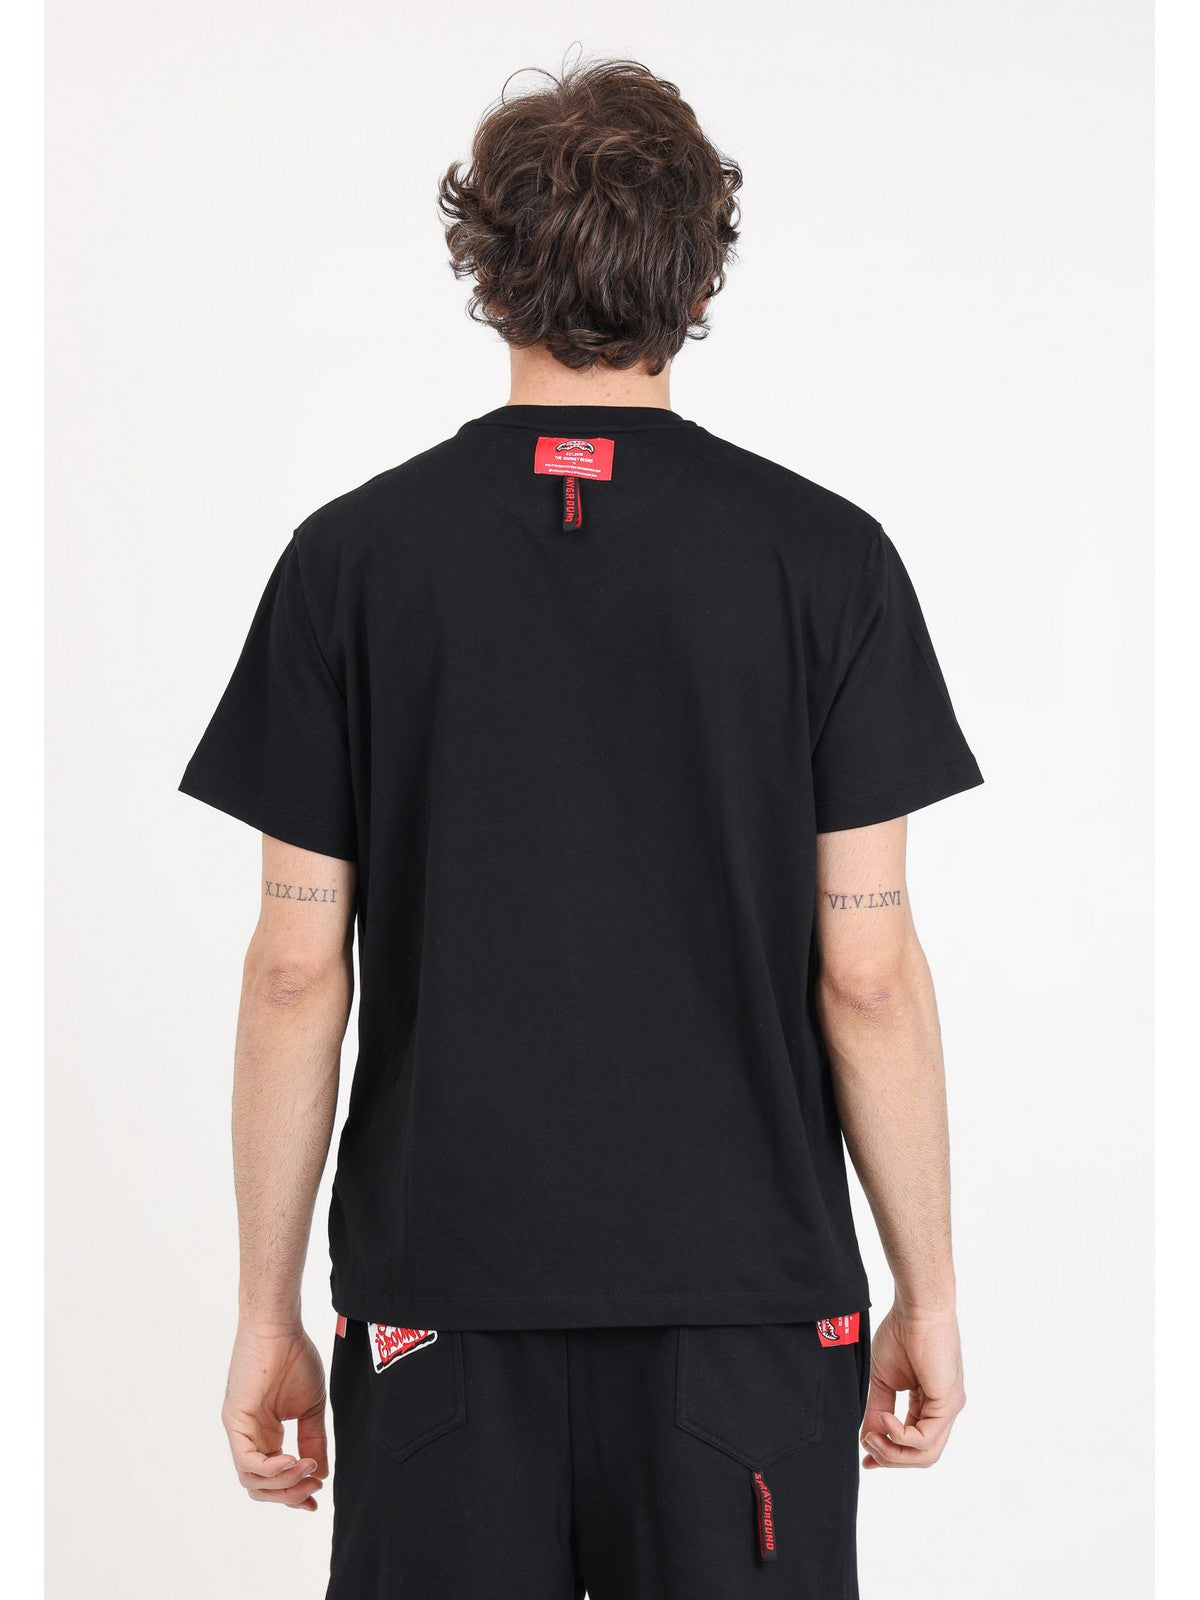 SPRAYGROUND T-Shirt et polo pour hommes SP439BLK Noir